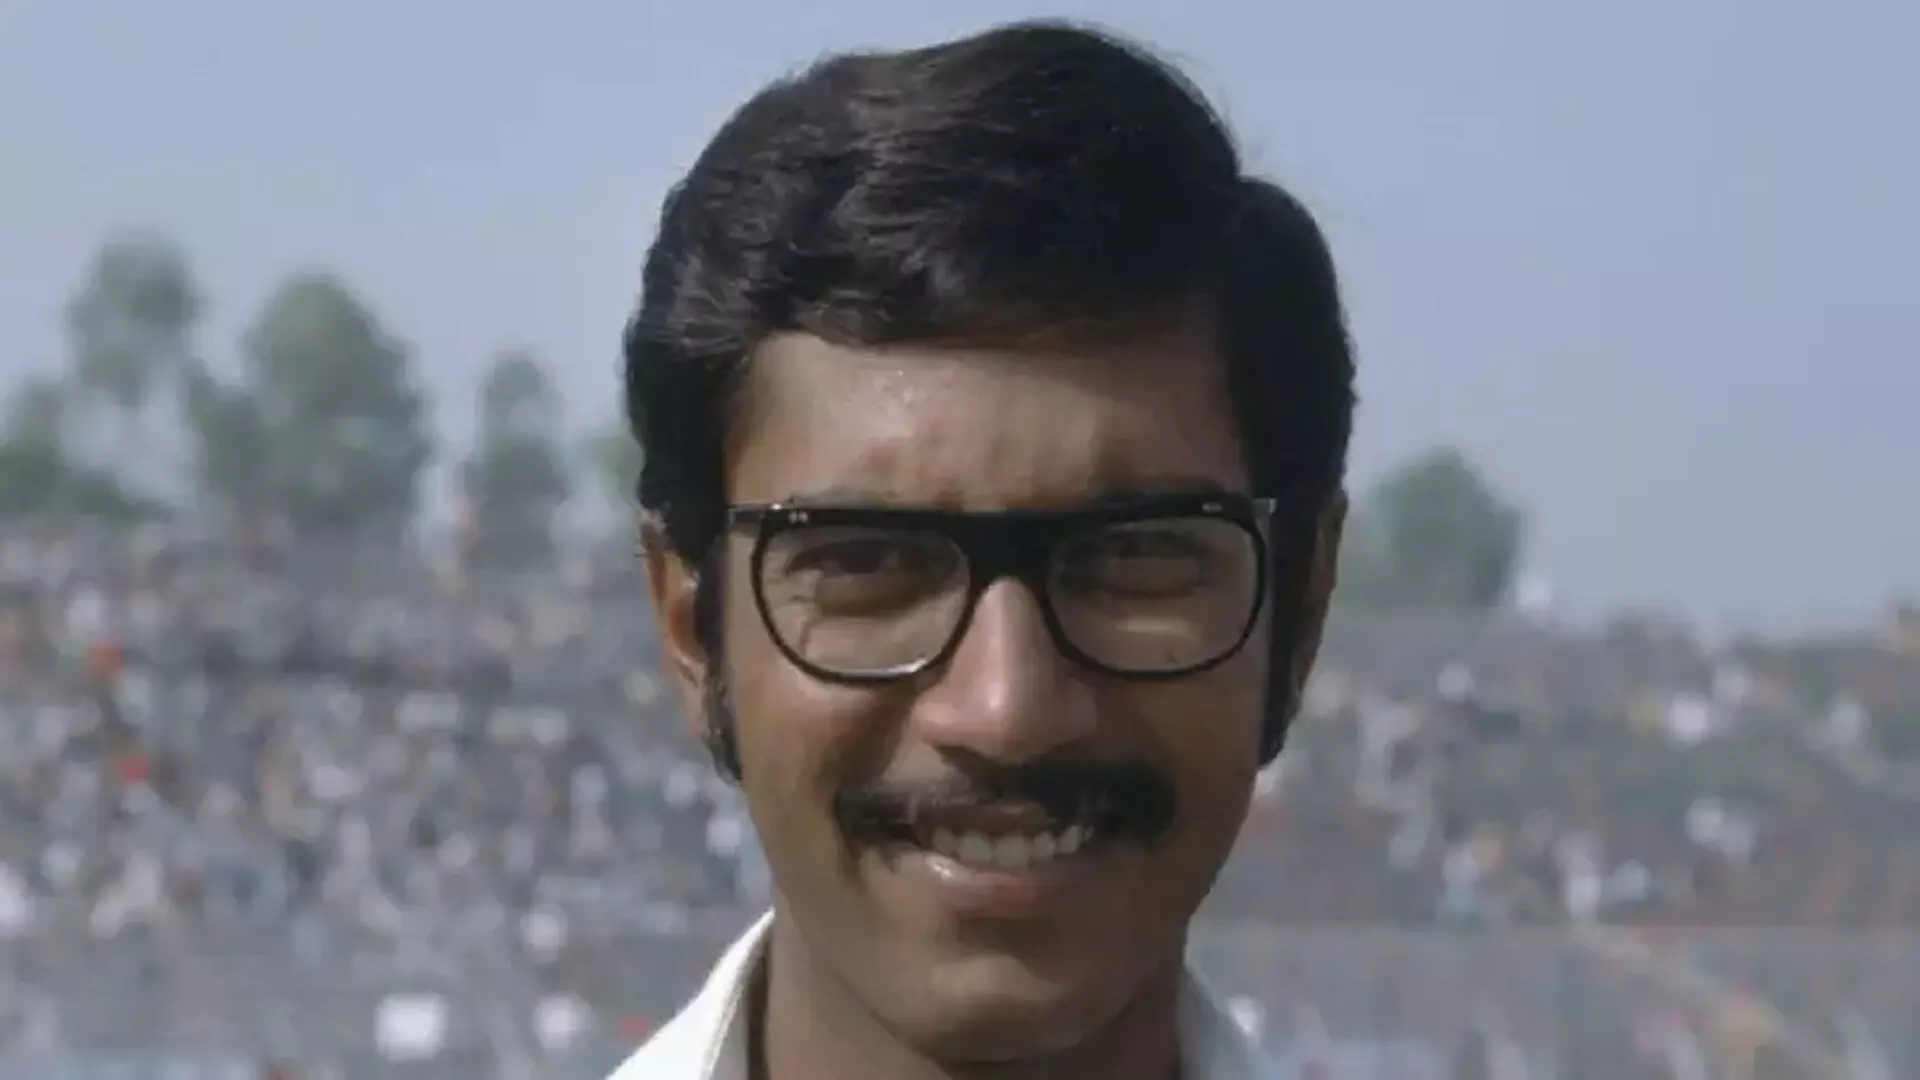 Former भारतीय क्रिकेटर अंशुमान गायकवाड़ का ब्लड कैंसर से निधन